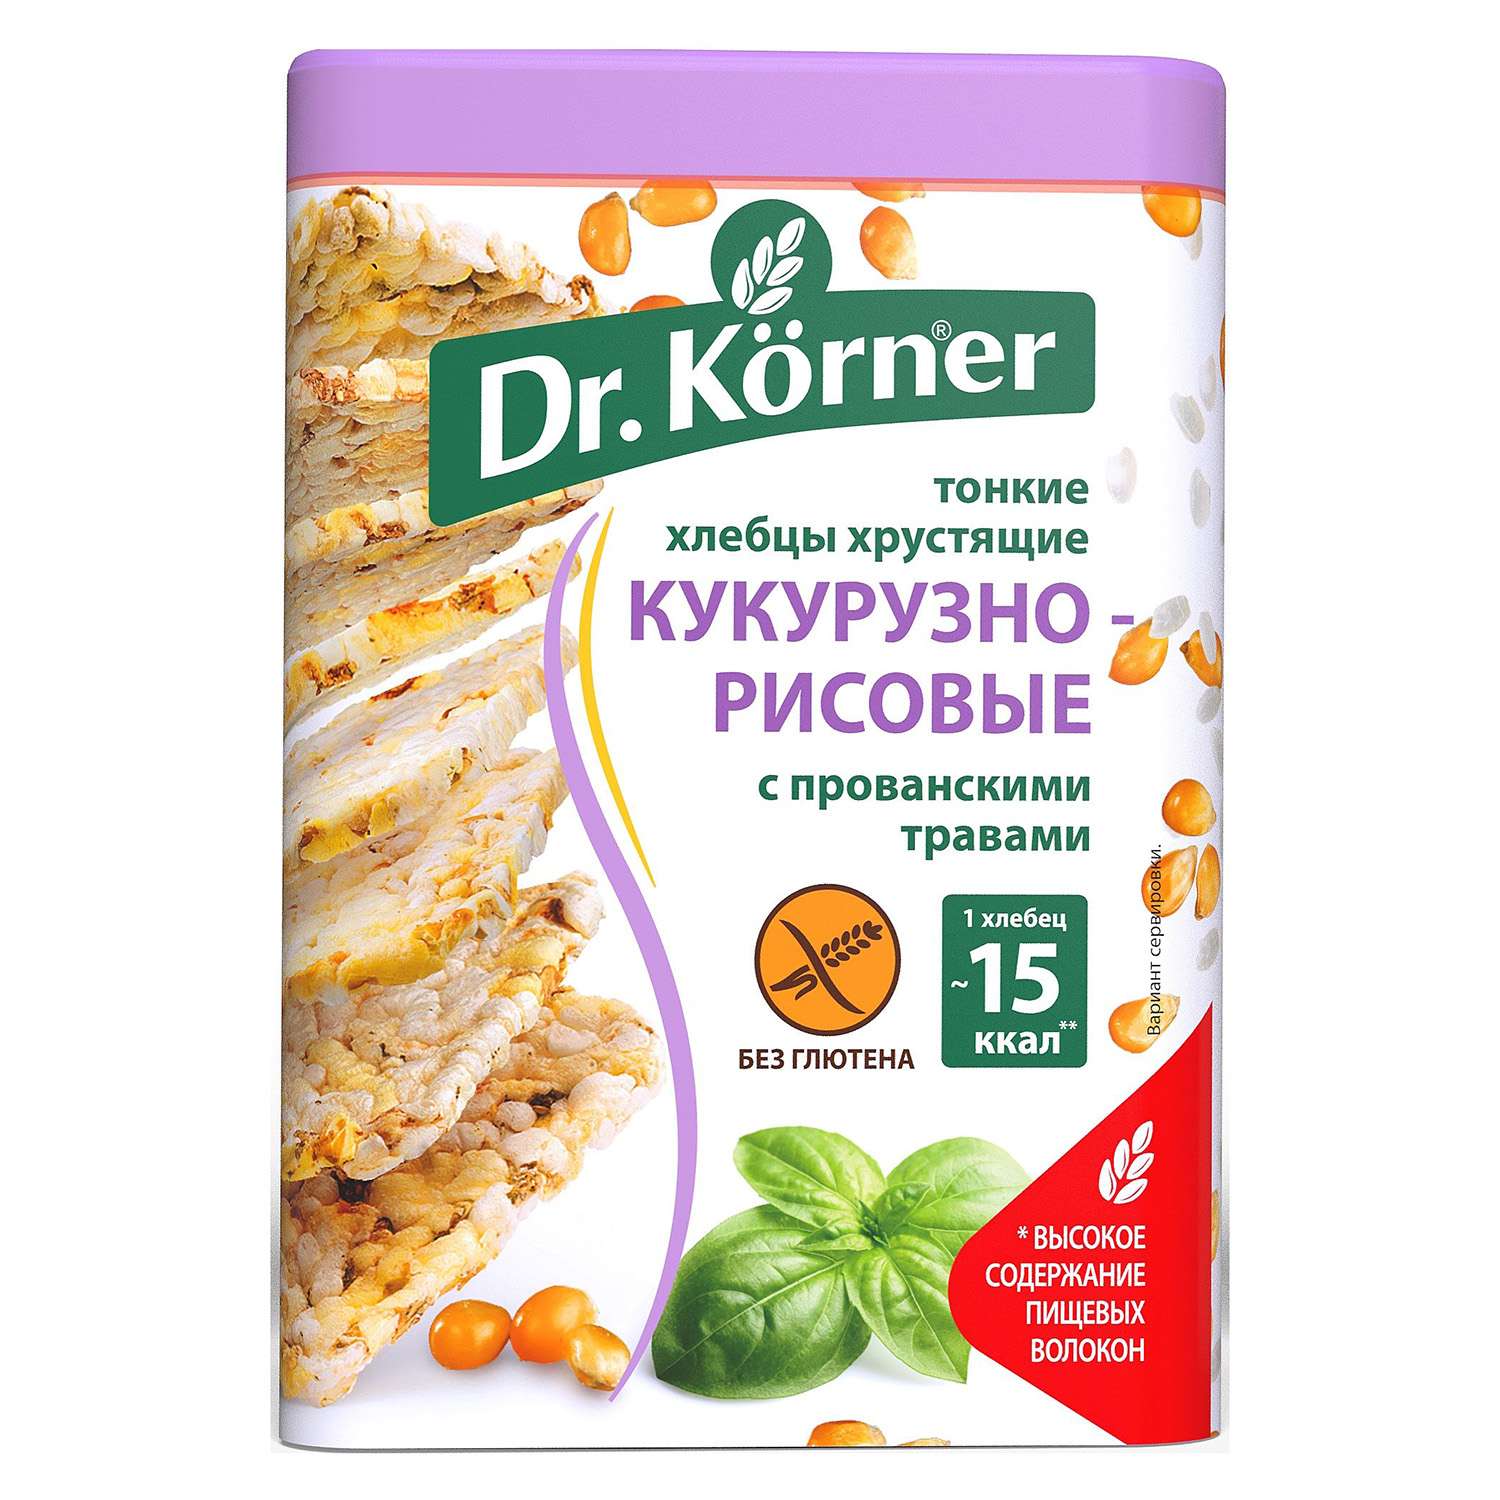 Хлебцы Dr. Korner кукурузно-рисовые с прованскими травами без глютена 100г - фото 1